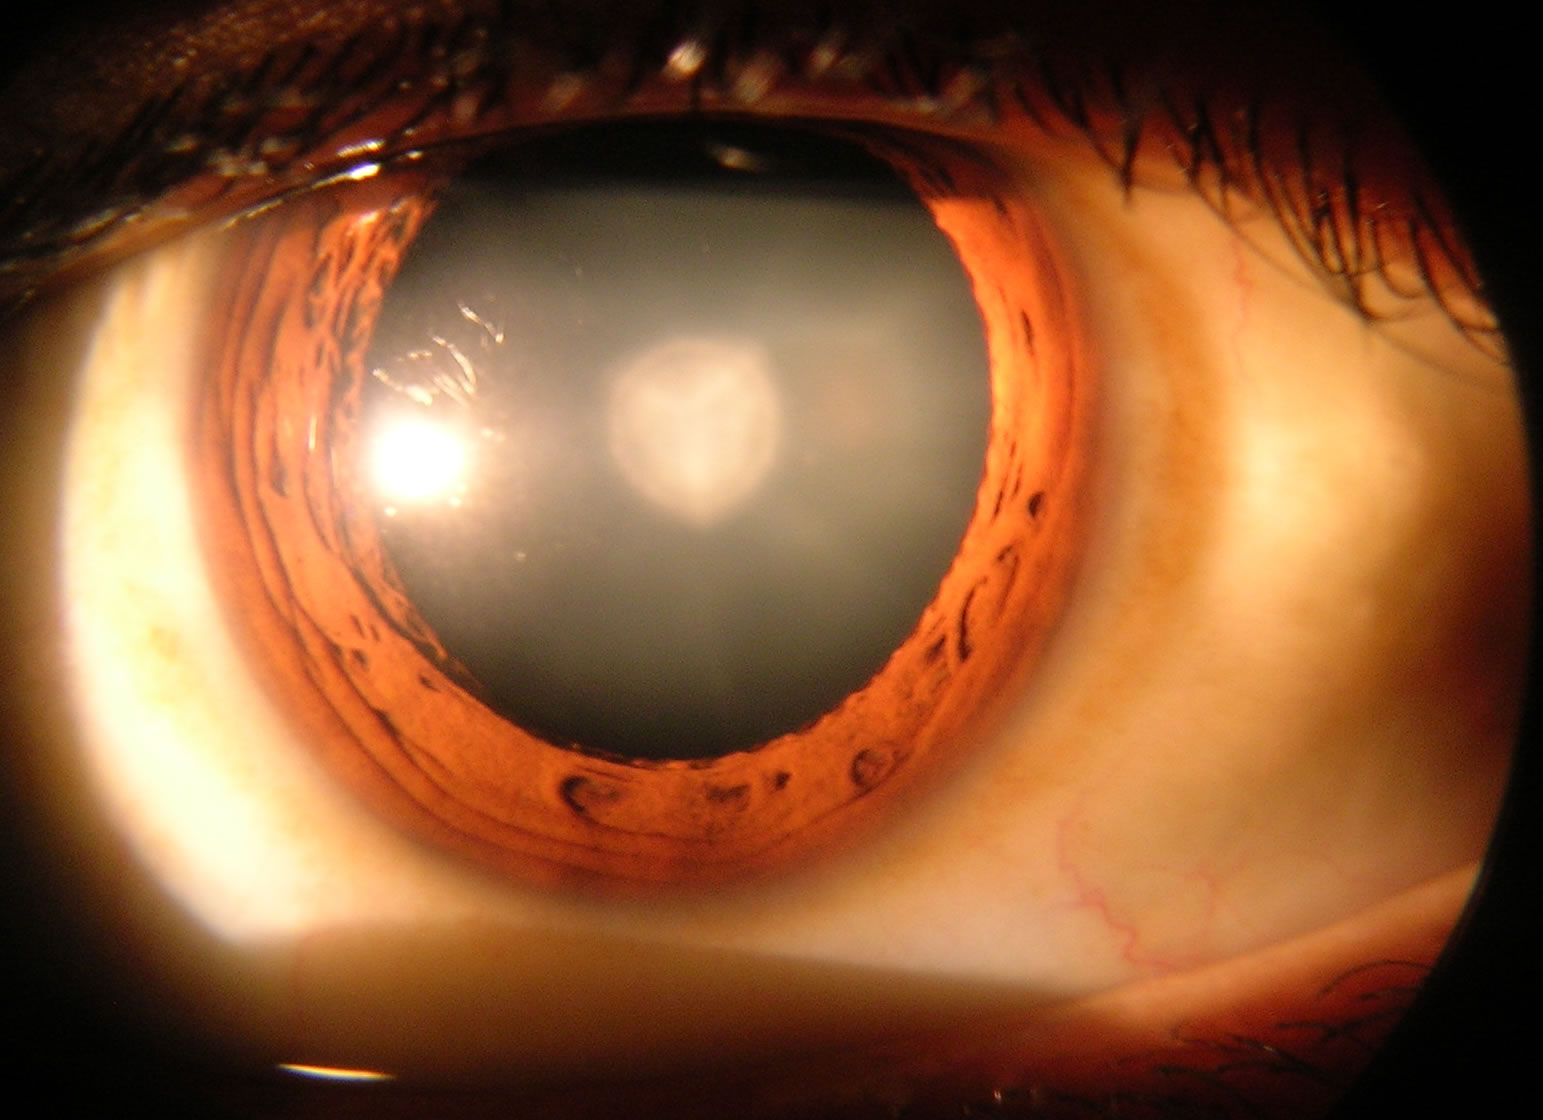 A cataract in a human eye